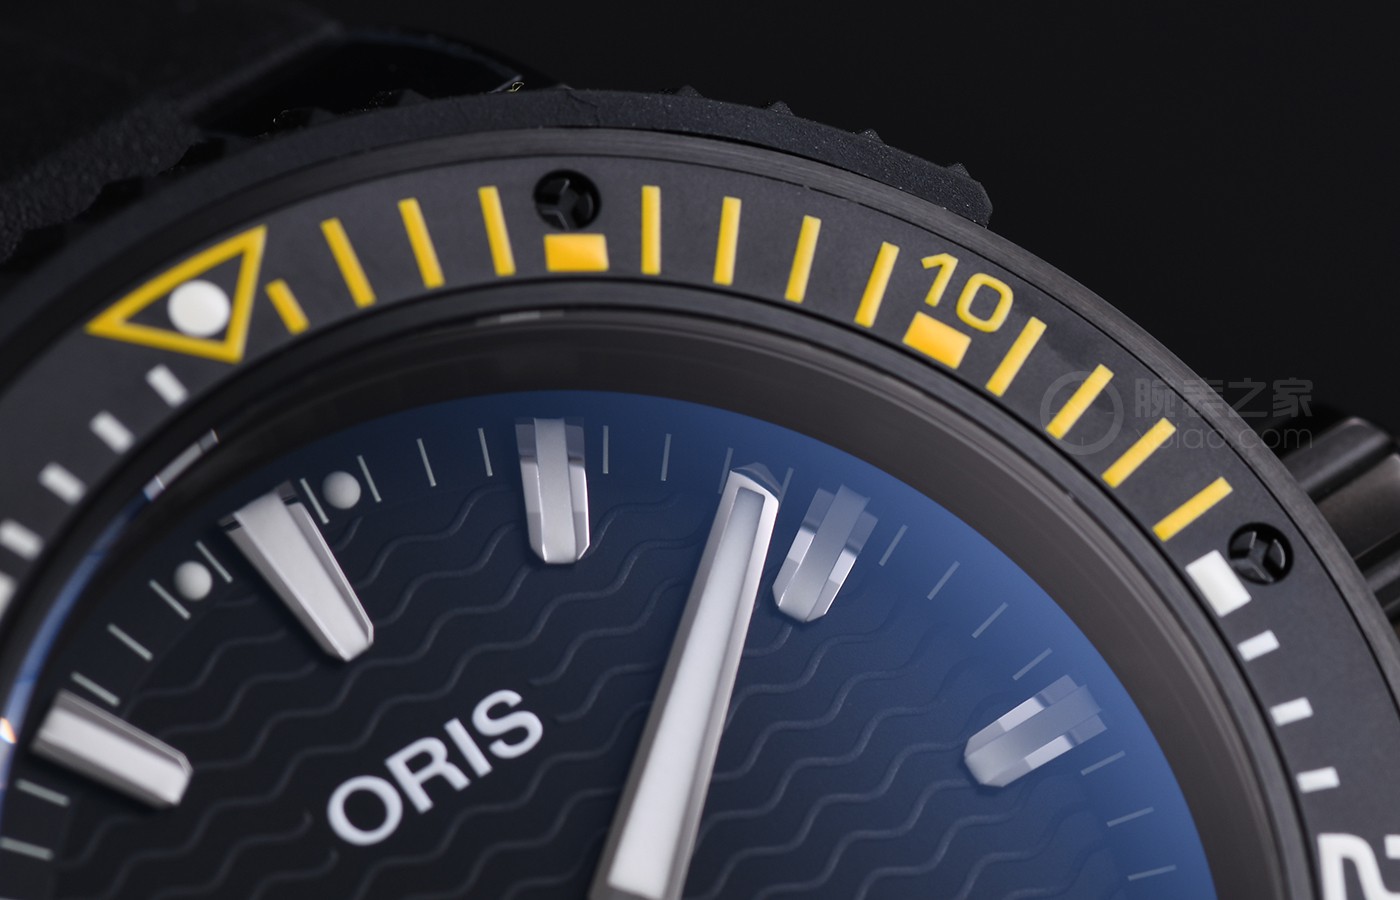 为技术专业深潜设计方案 品评豪利时AquisPro 400自主机芯日历腕表